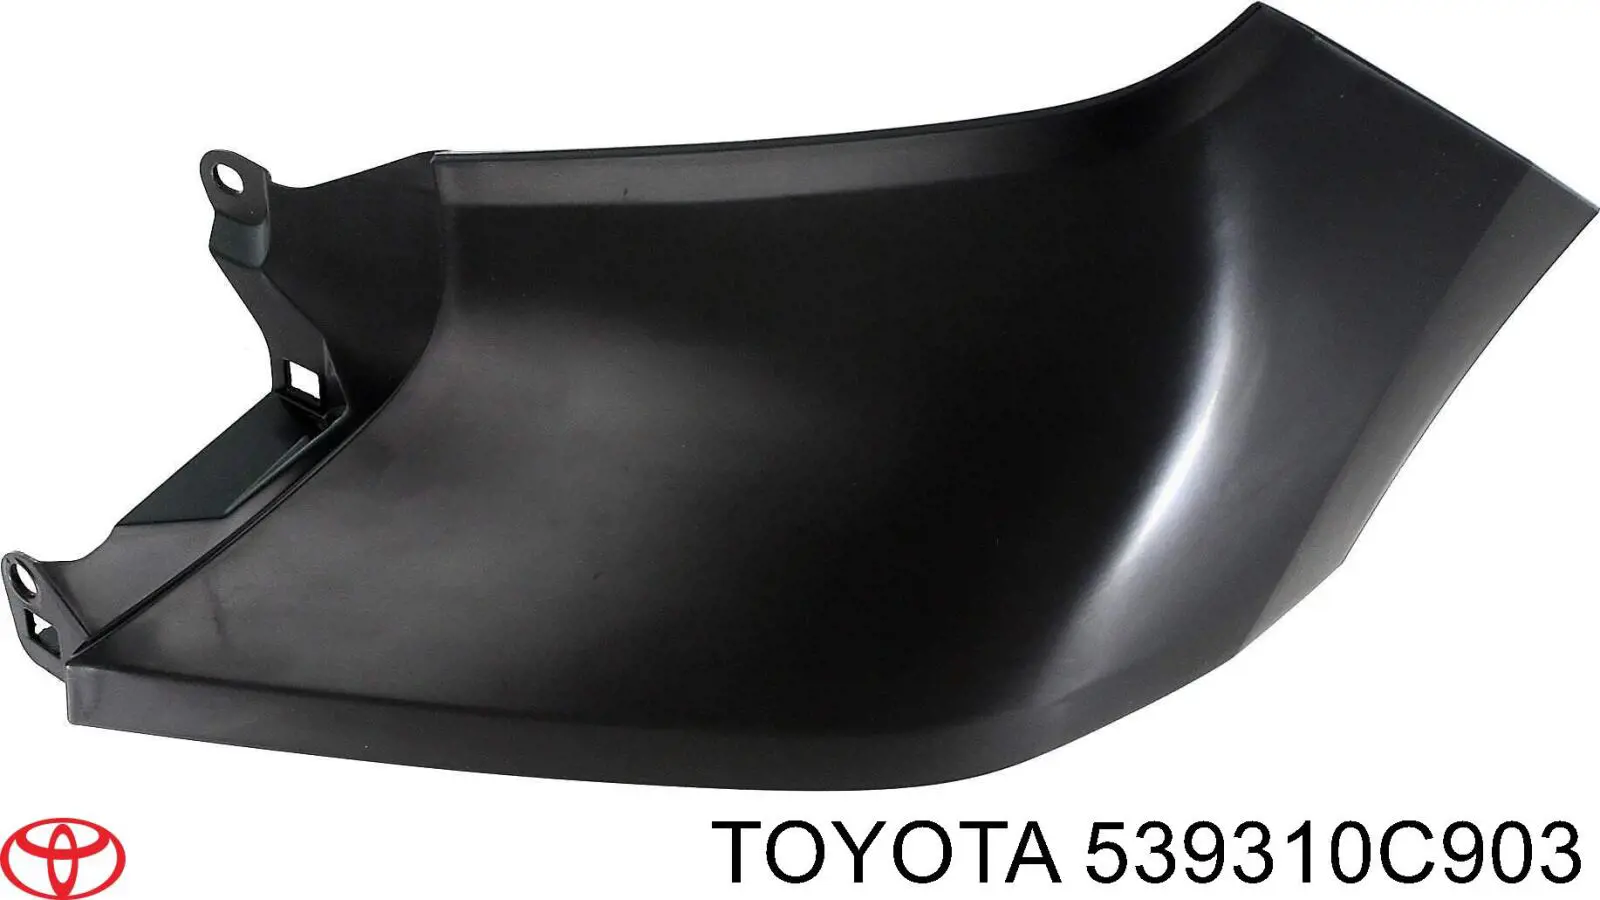 Listón del faro derecho para Toyota Tundra 